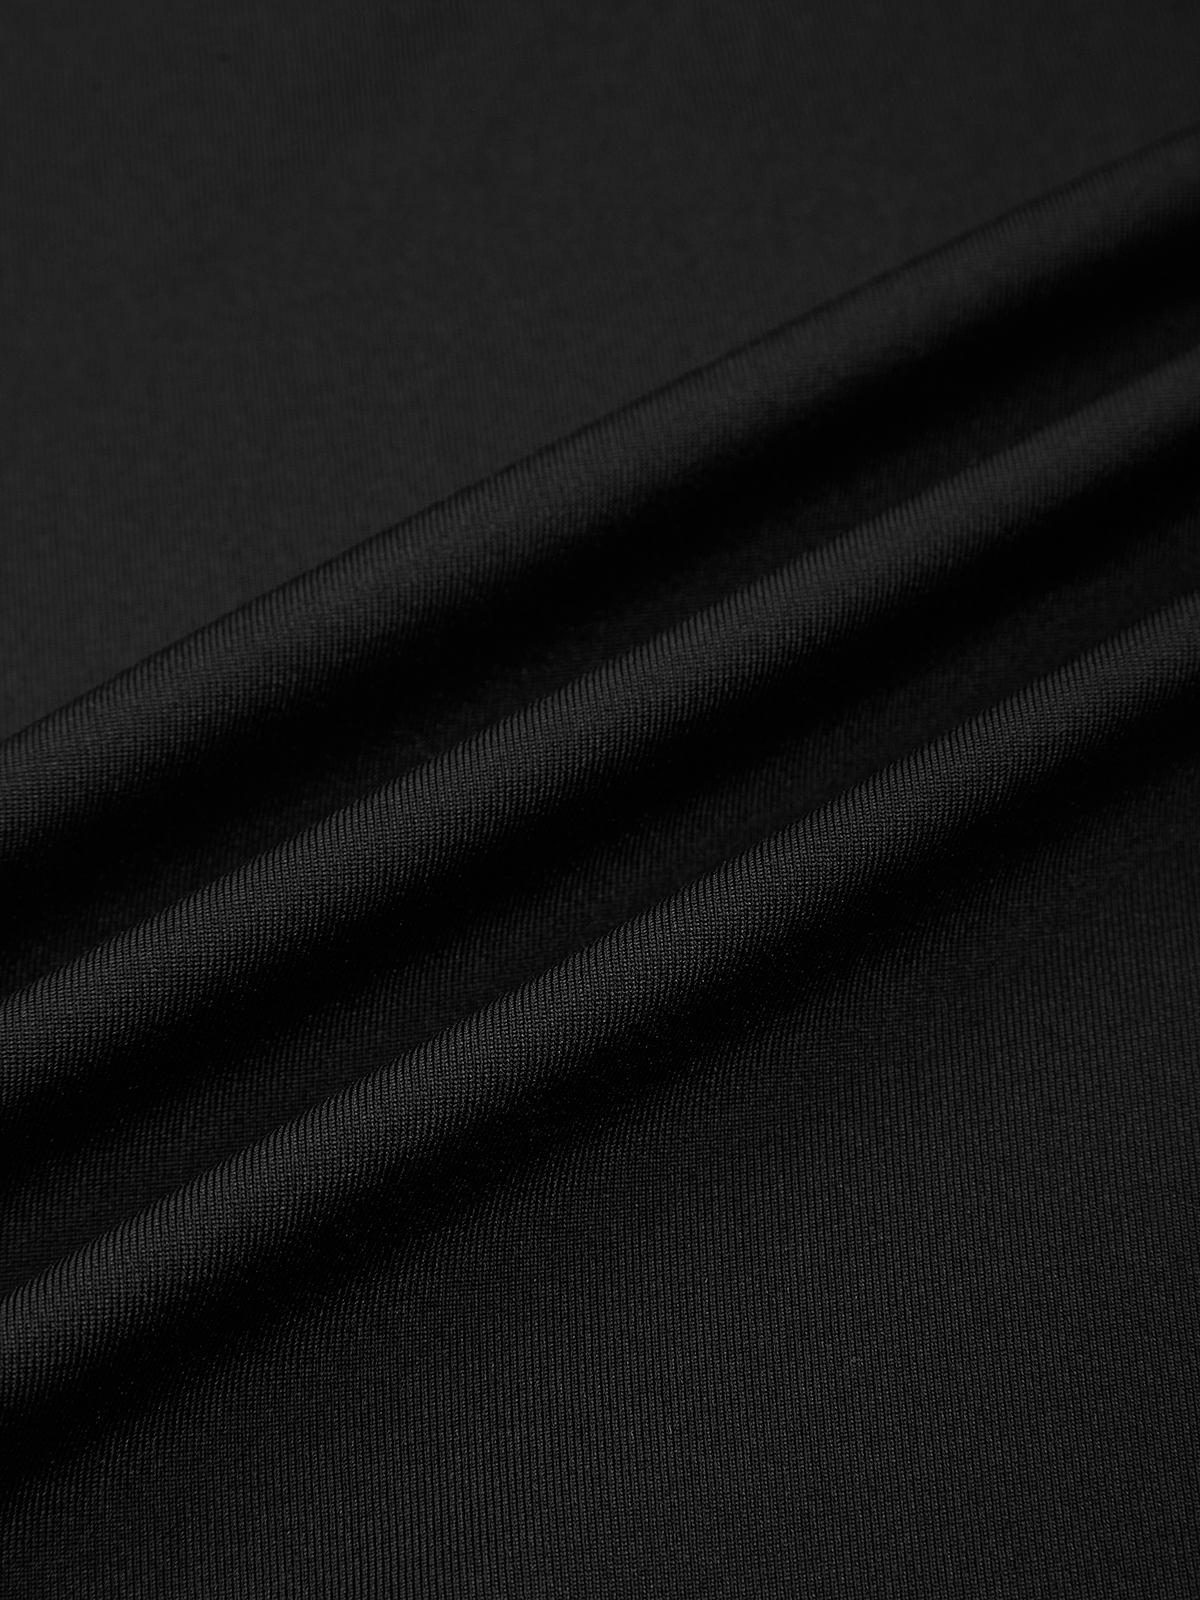 Cut Out Asymmetrical Design Ruffles Strapless Plain Sleeveless Maxi Dress